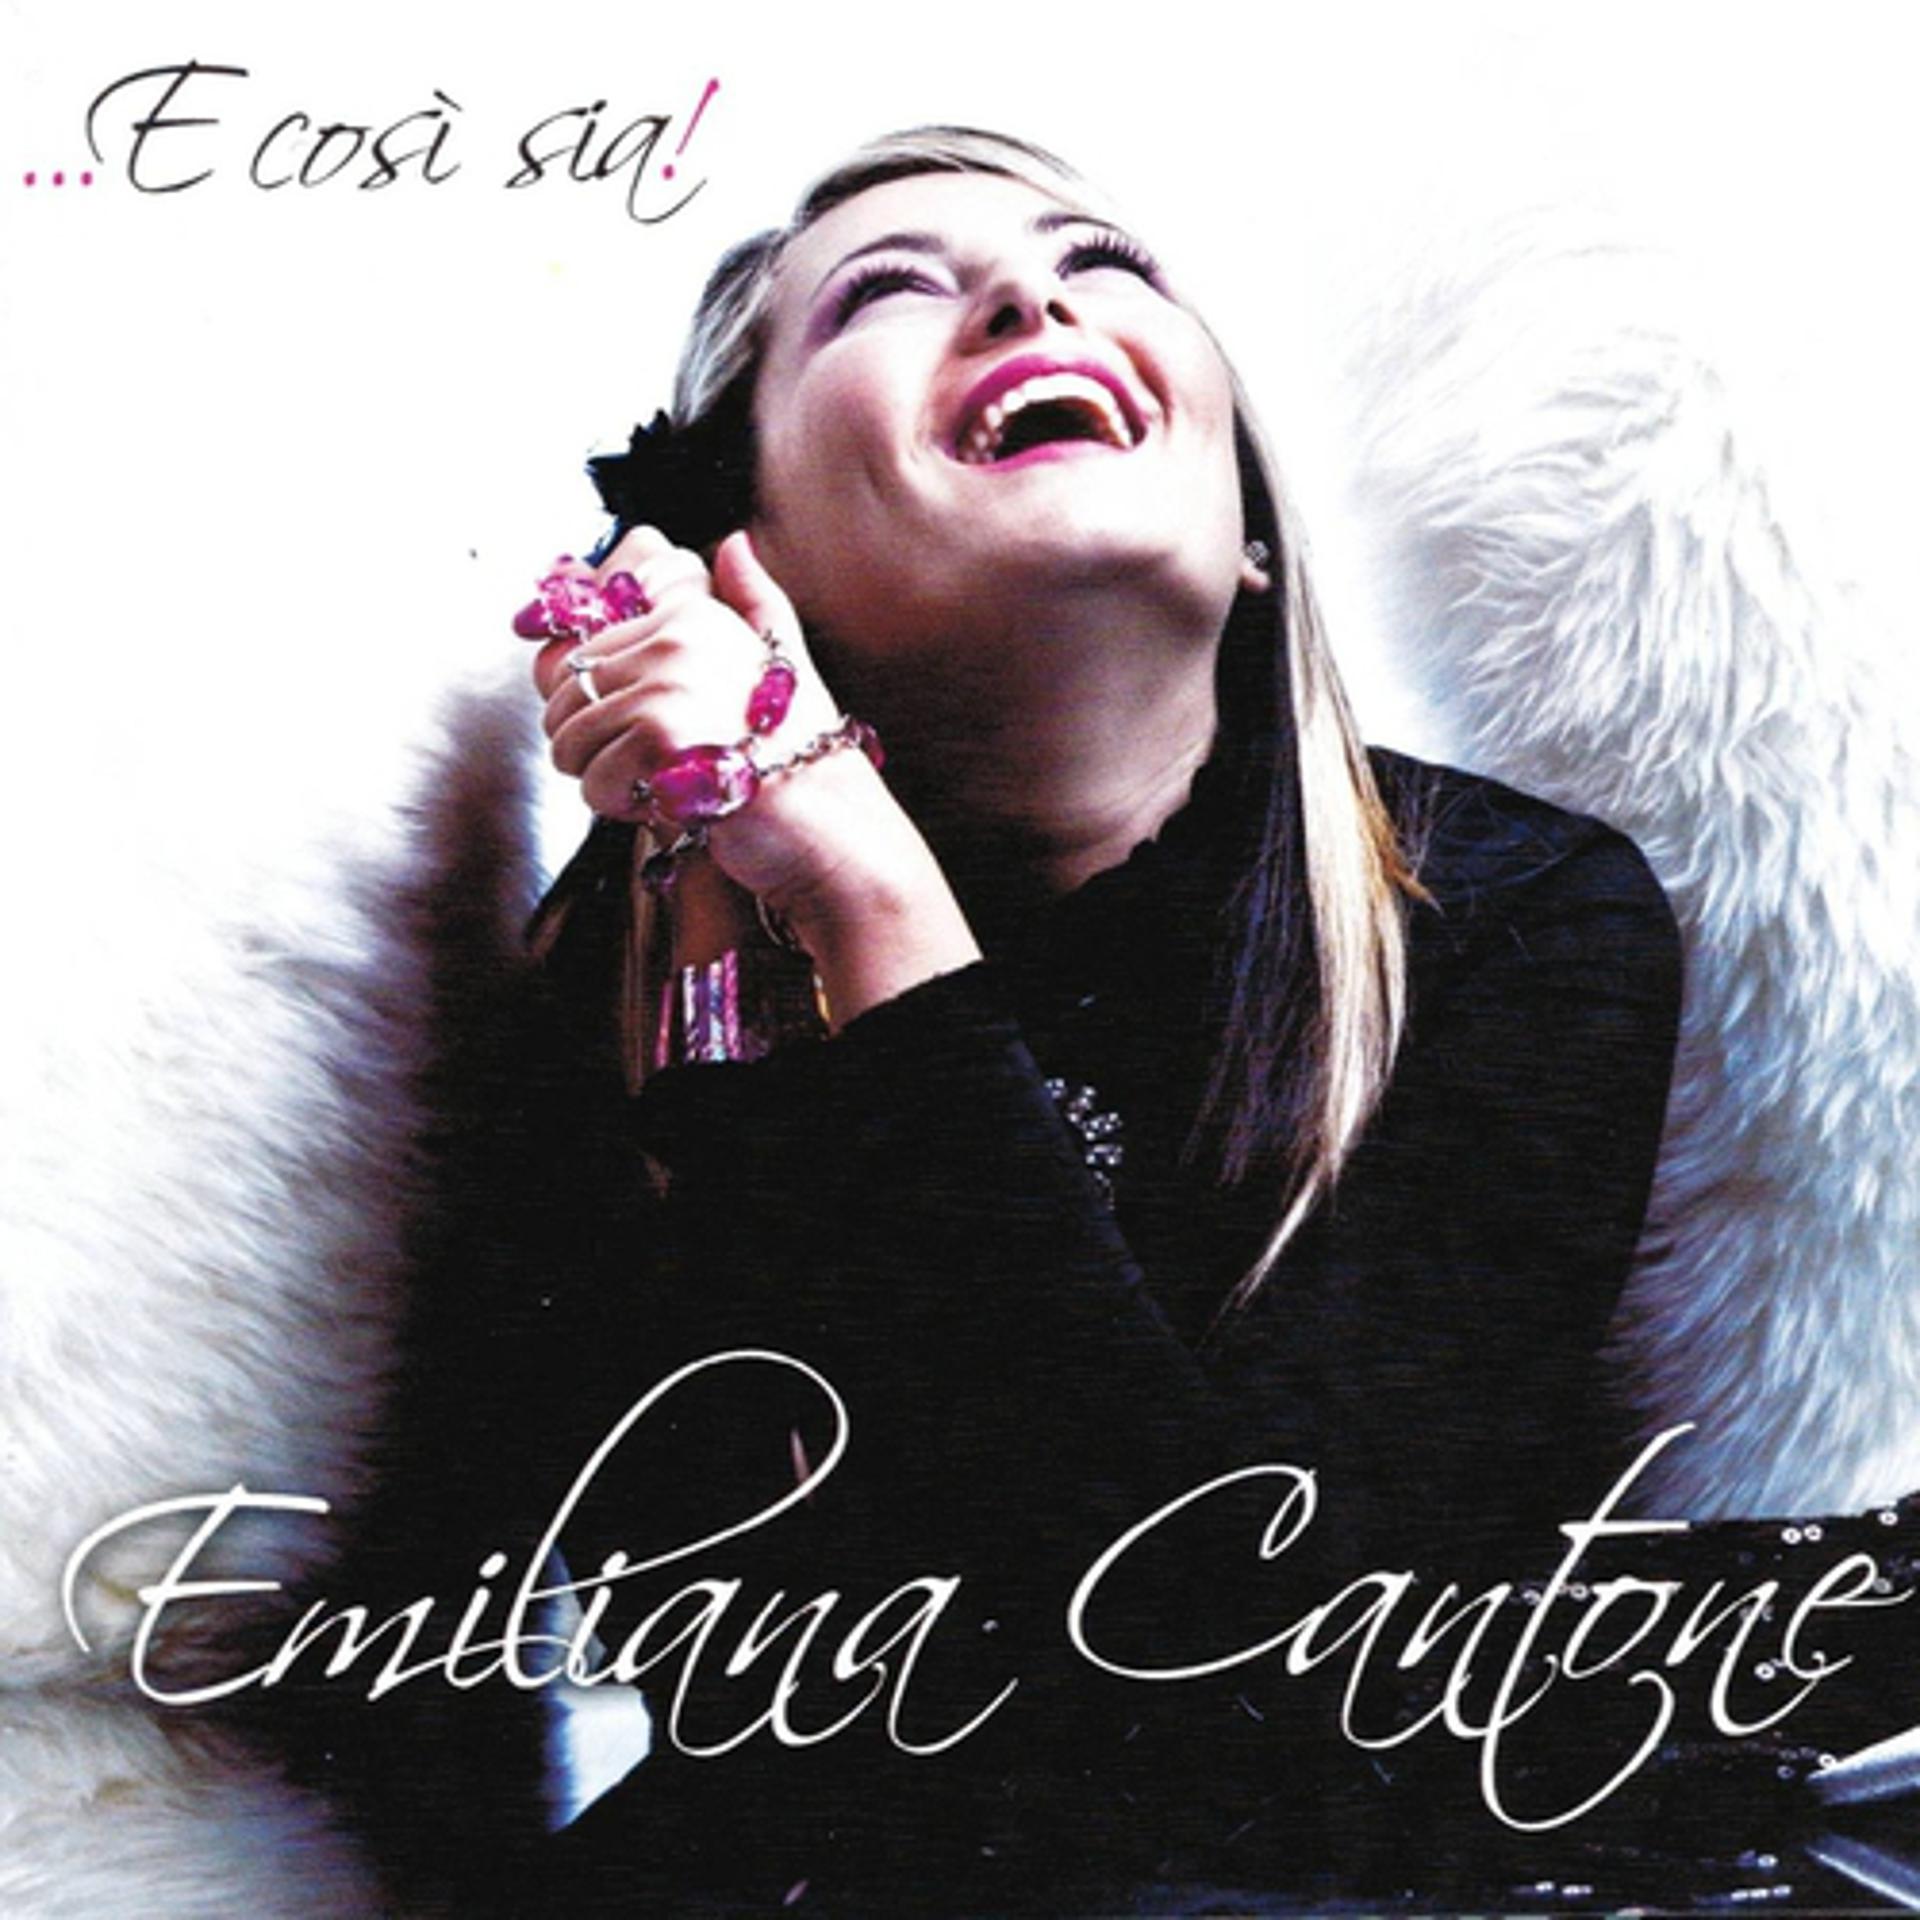 Постер к треку Emiliana Cantone - Vieni da me